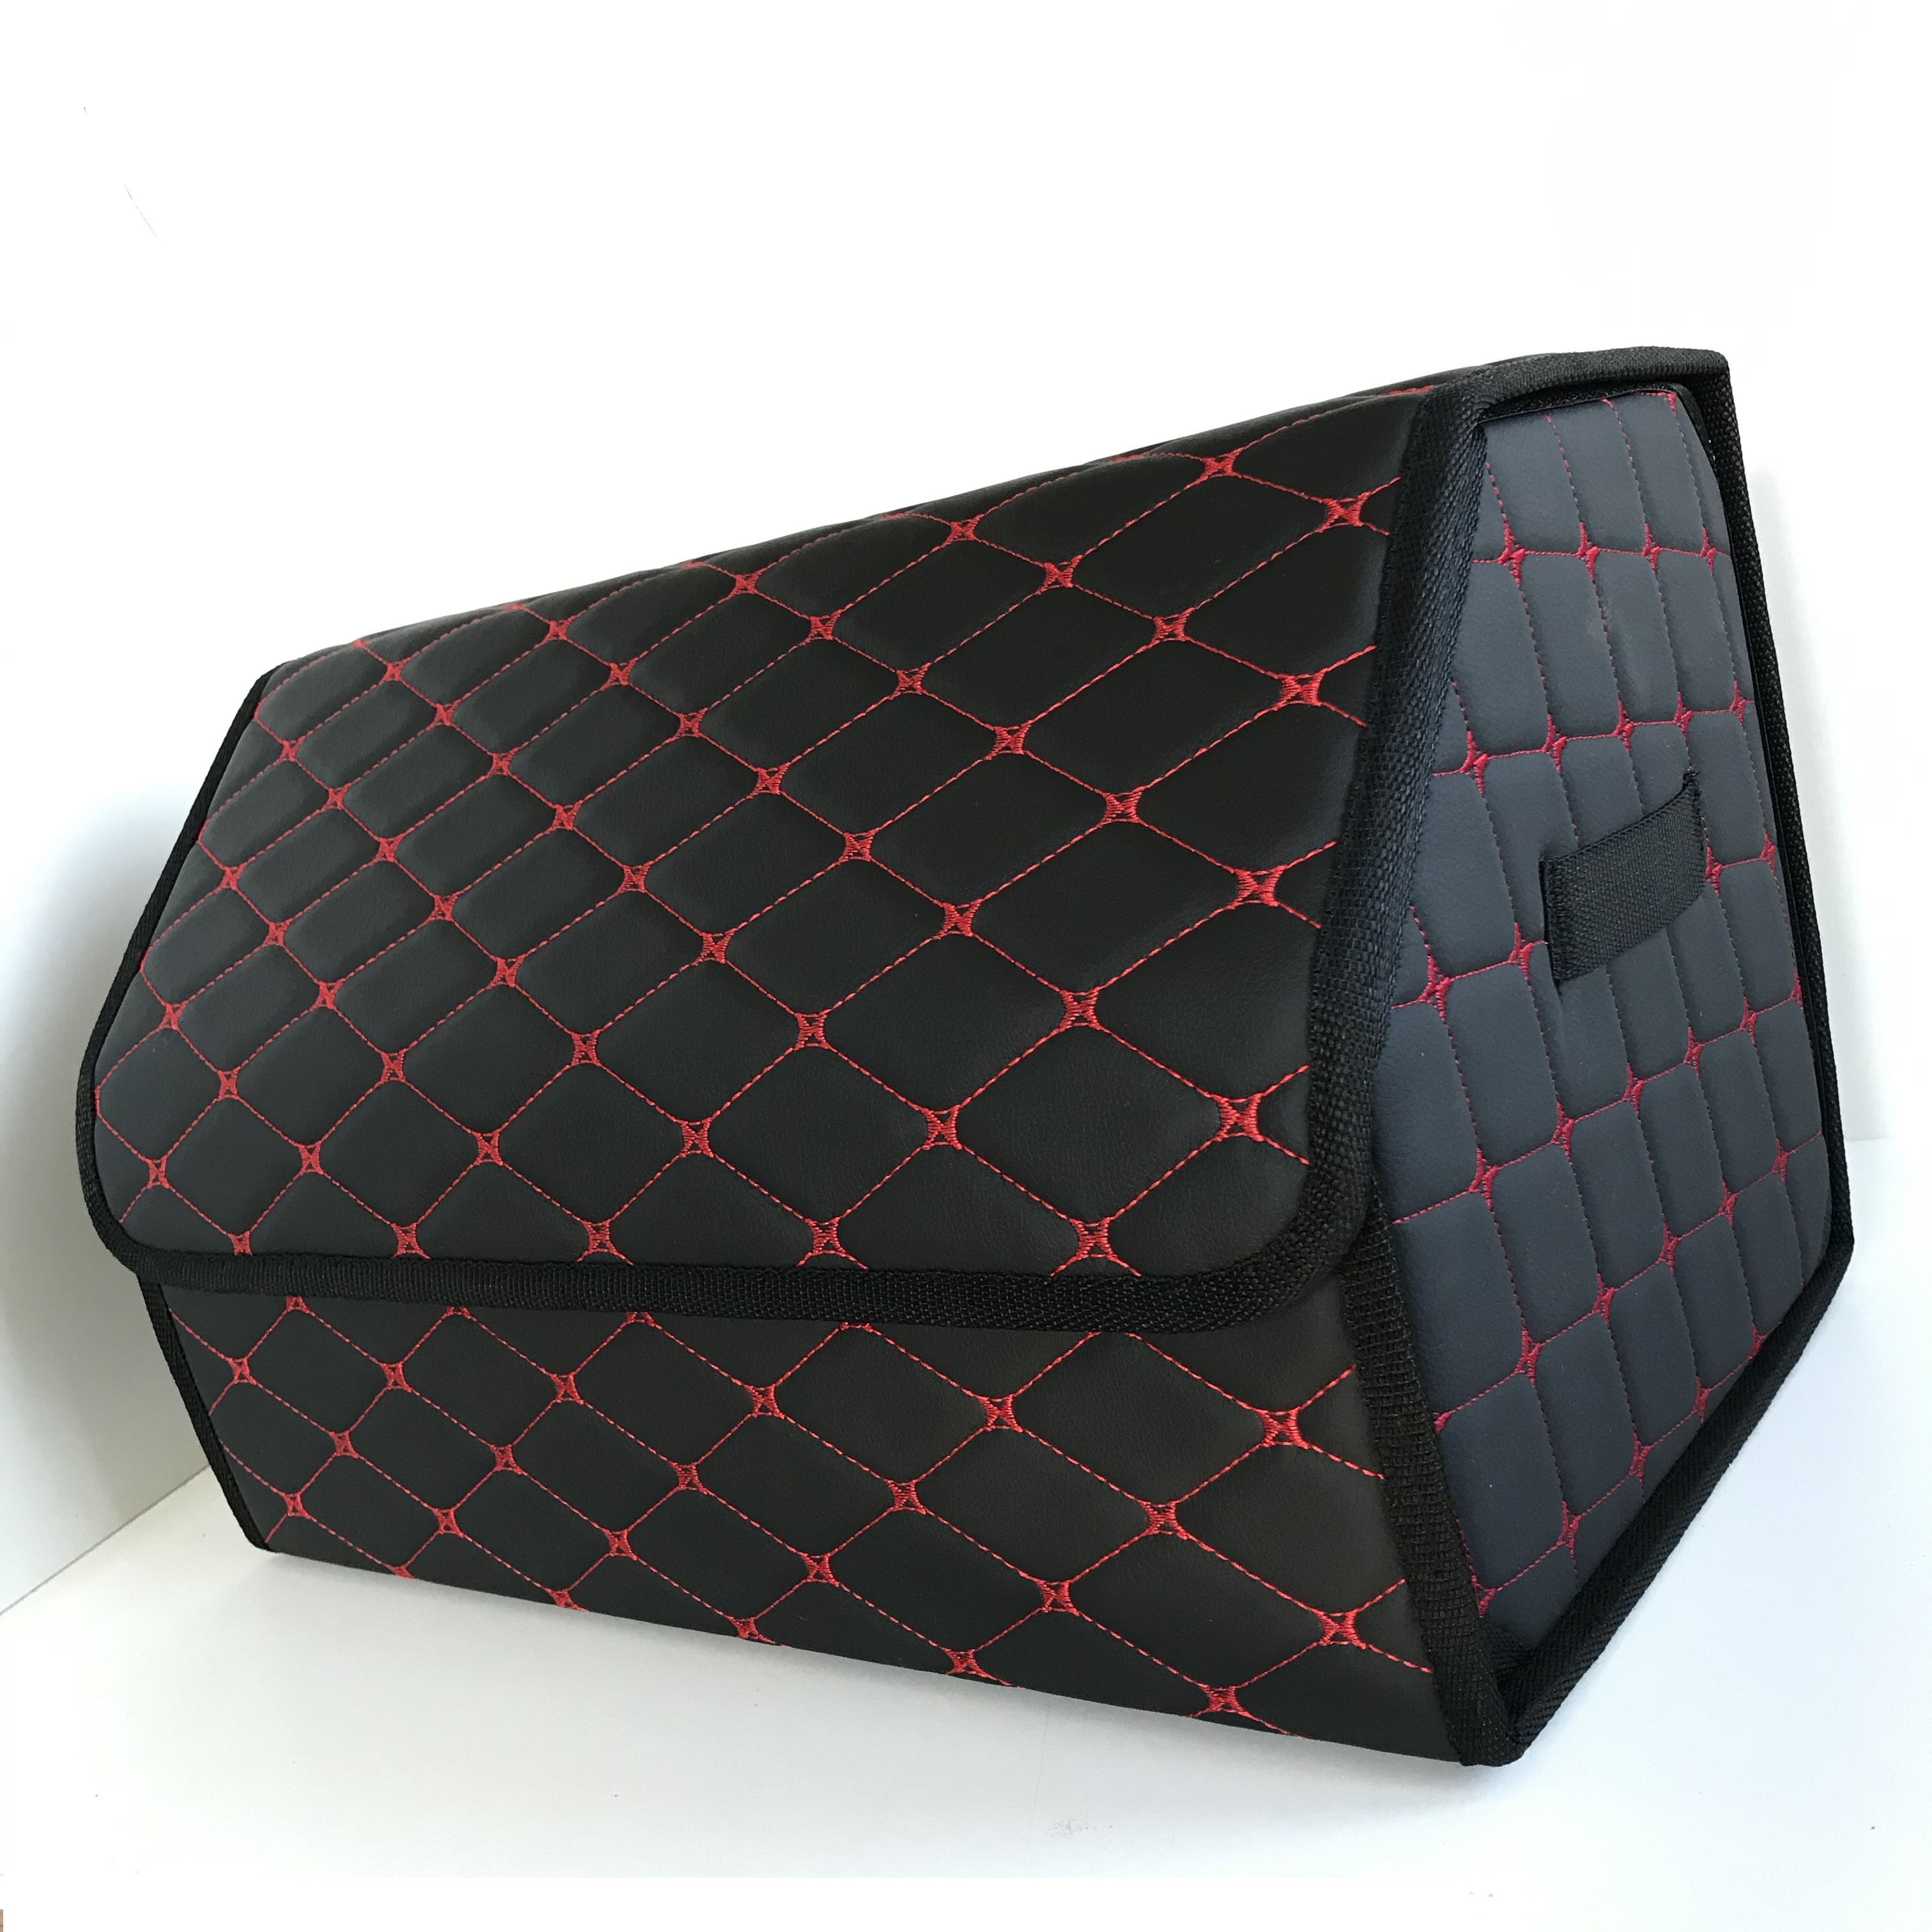 НОВИНКА! Органайзер в багажник-СУМКА (50х30х30см) черный цвет ,цветная просторчка -стеганная